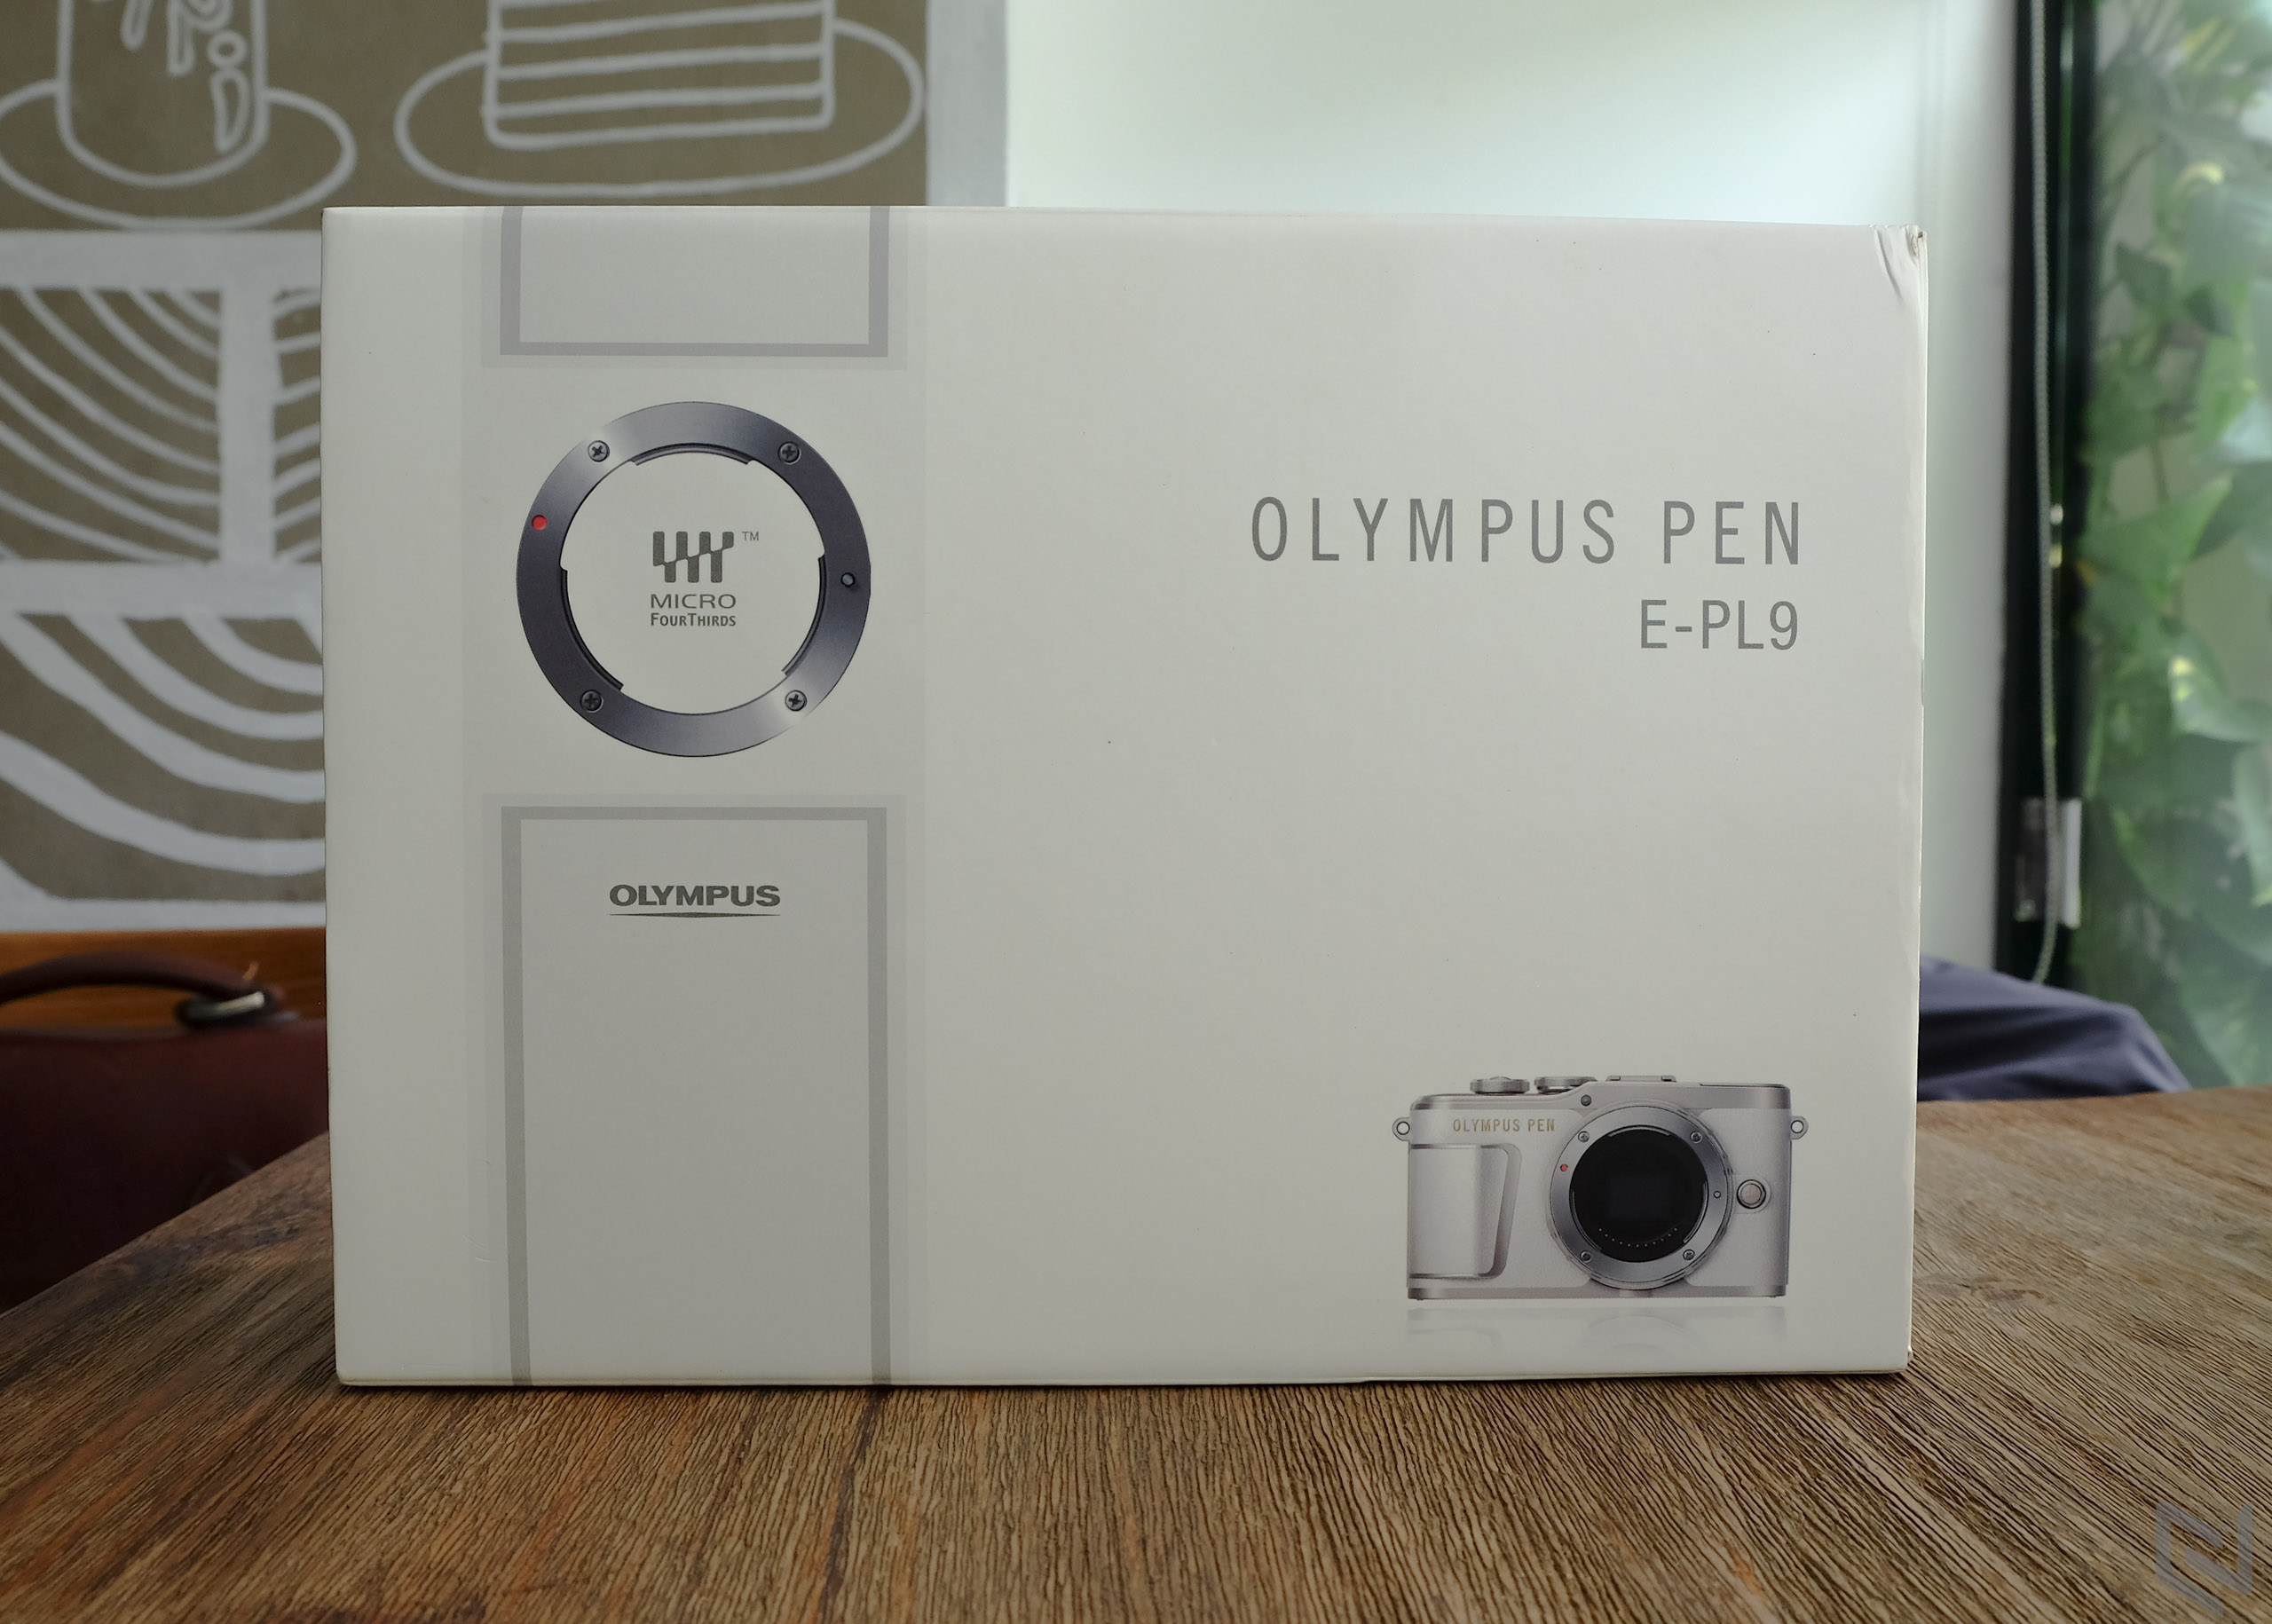 Trên tay Olympus Pen E-PL9: Hoài cổ xen lẫn hiện đại, nhiều nâng cấp đáng giá